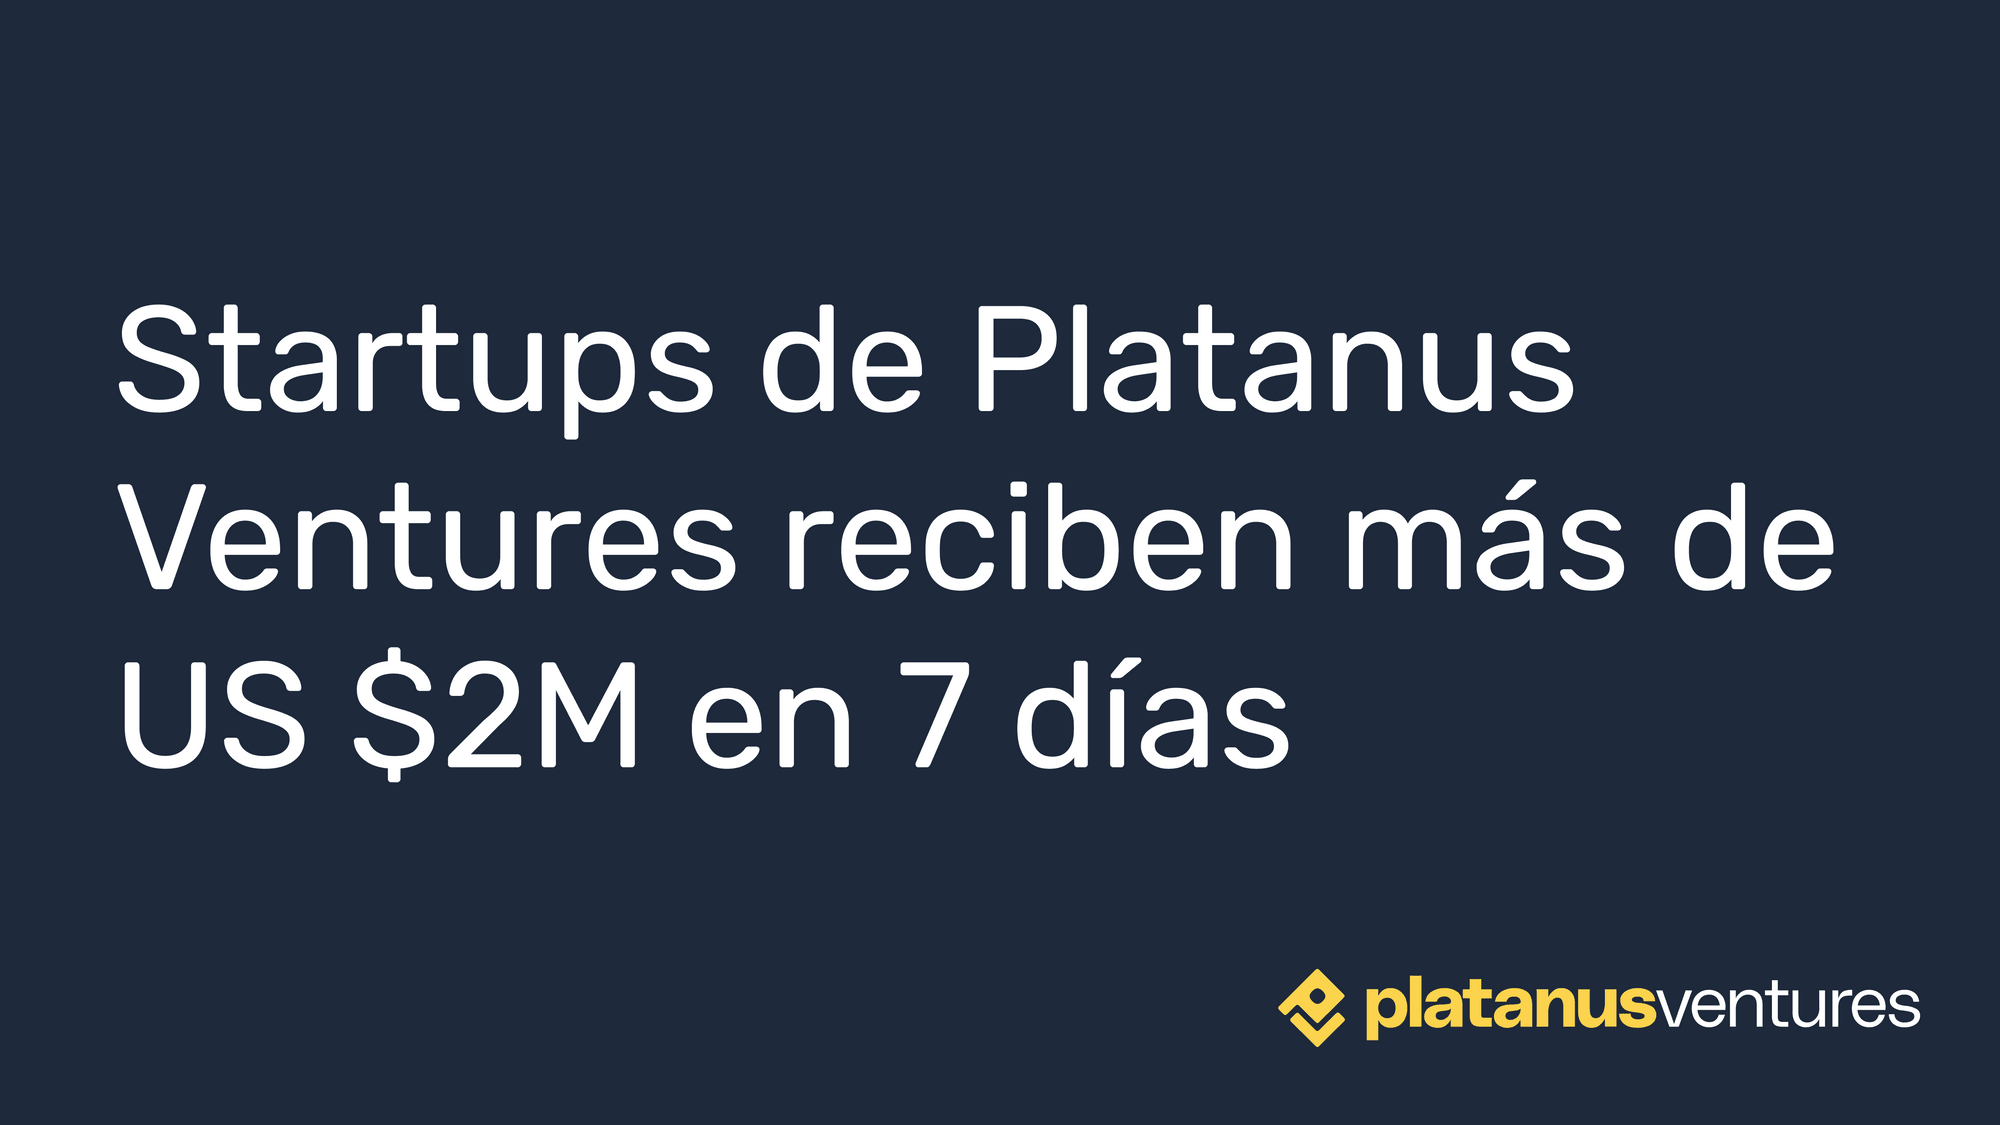 Startups de Platanus Ventures reciben más de US $2M en 7 días